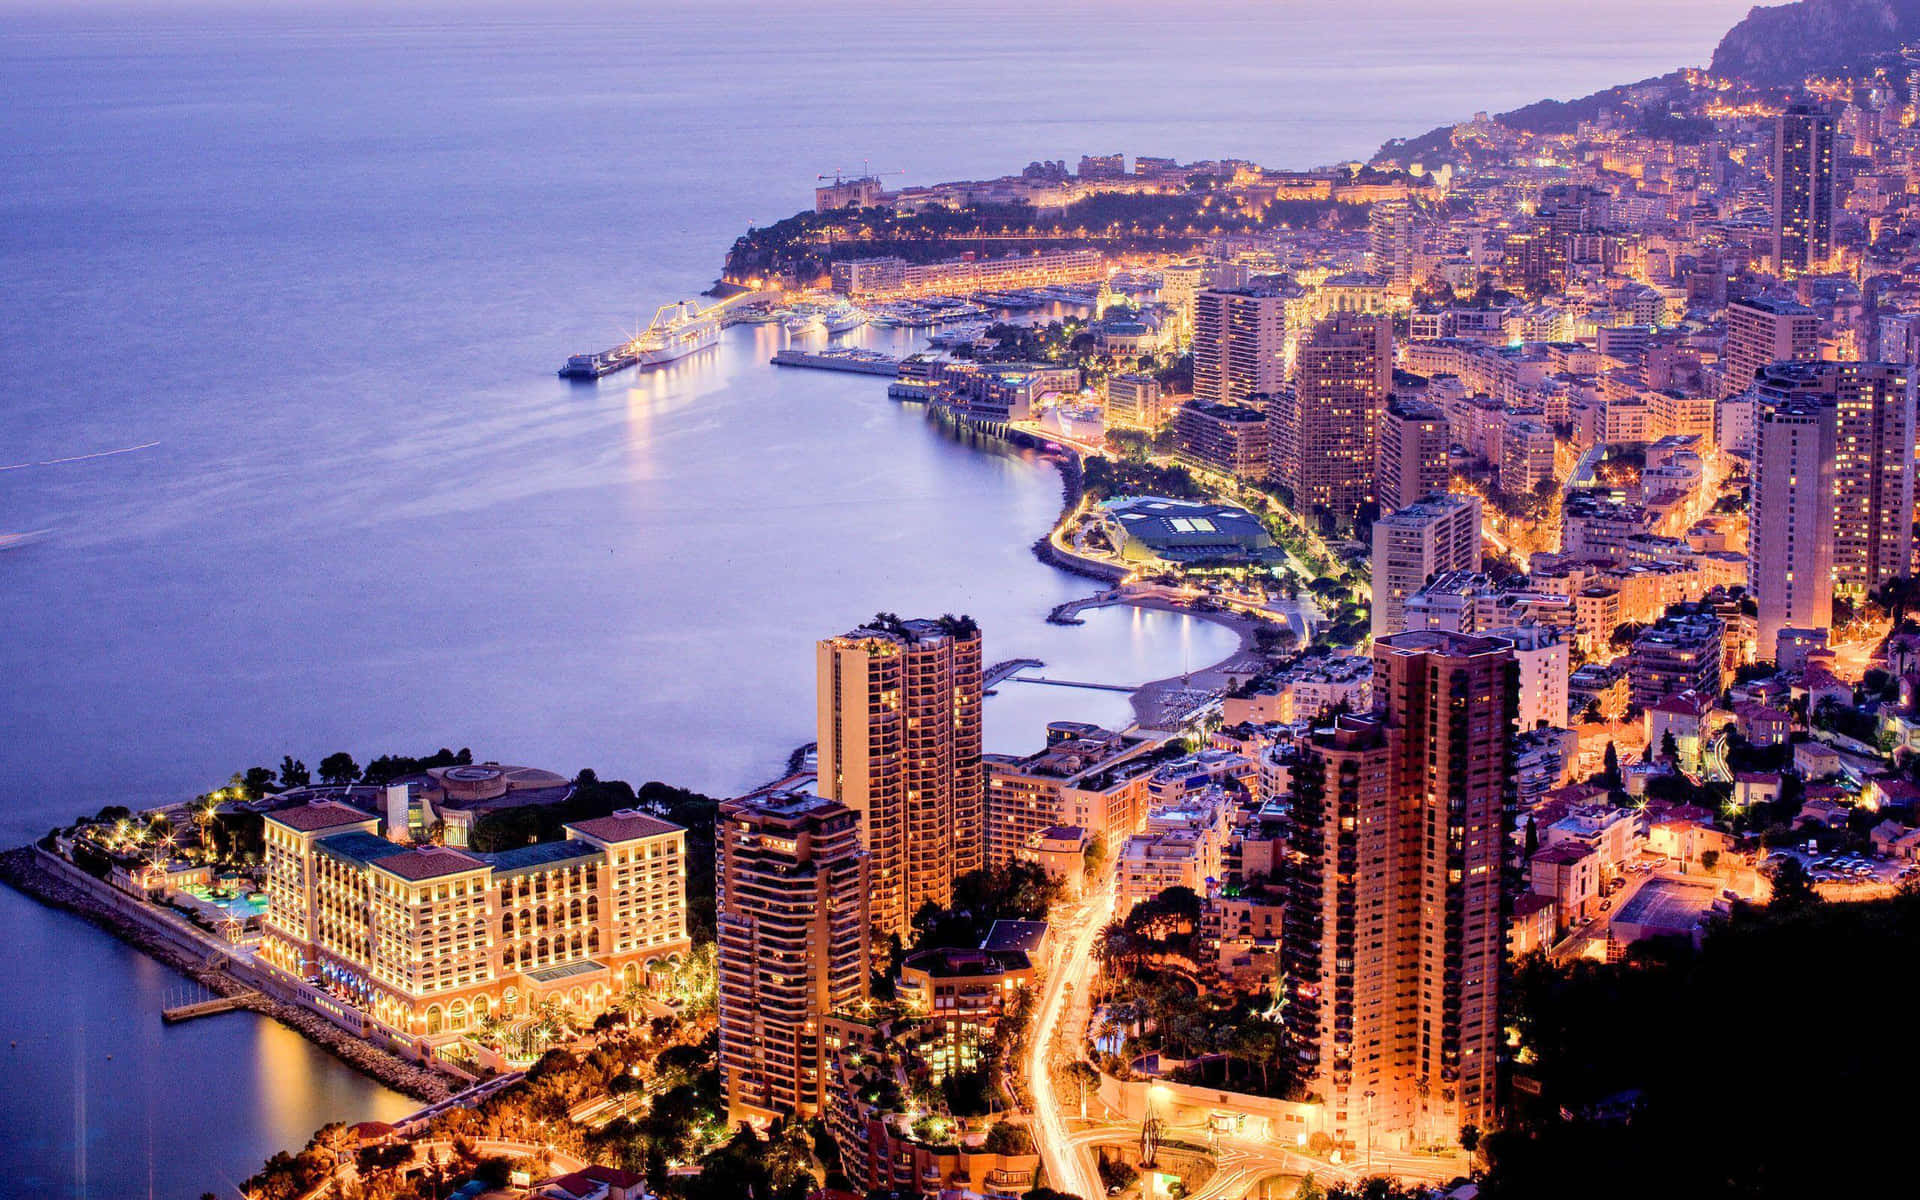 Panoramic View Of The Stunning Monaco Skyline